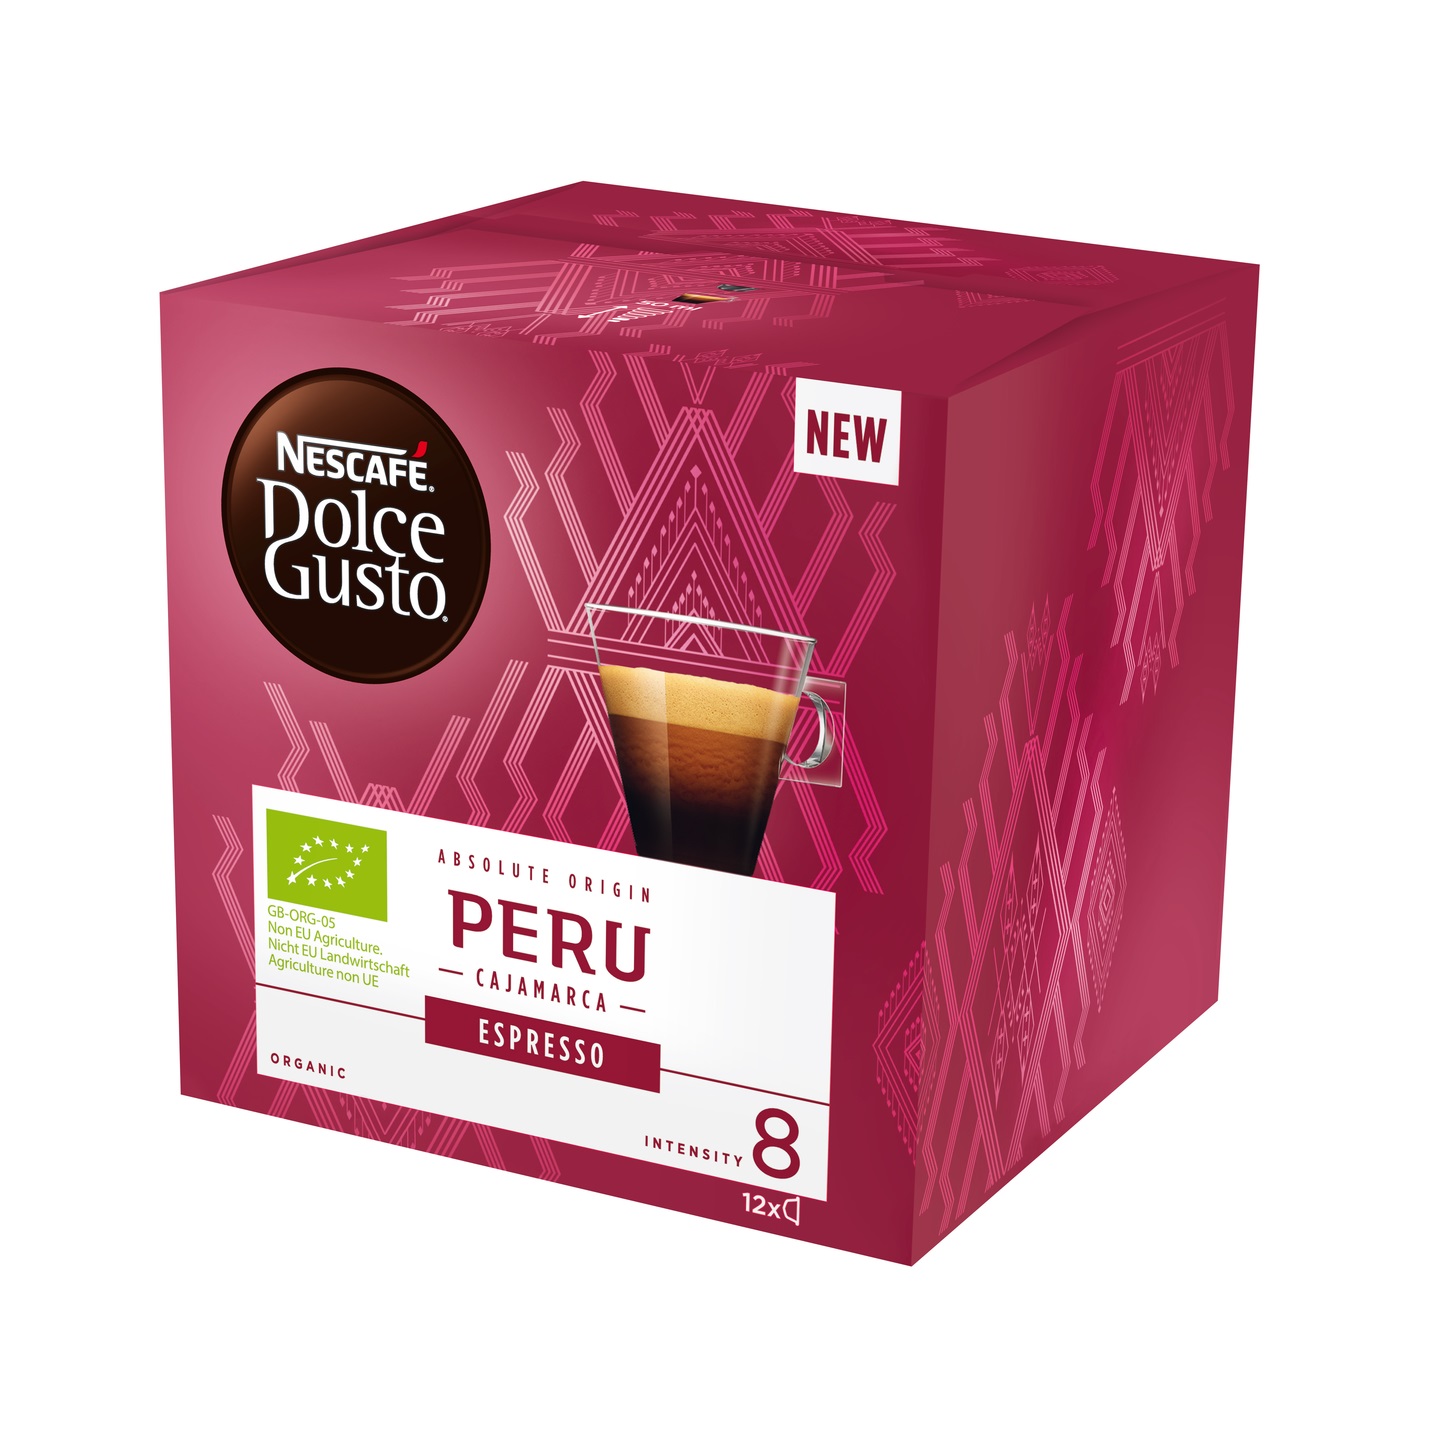 Nescafe Dolce Gusto Espresso Peru Capsules 12 Caps